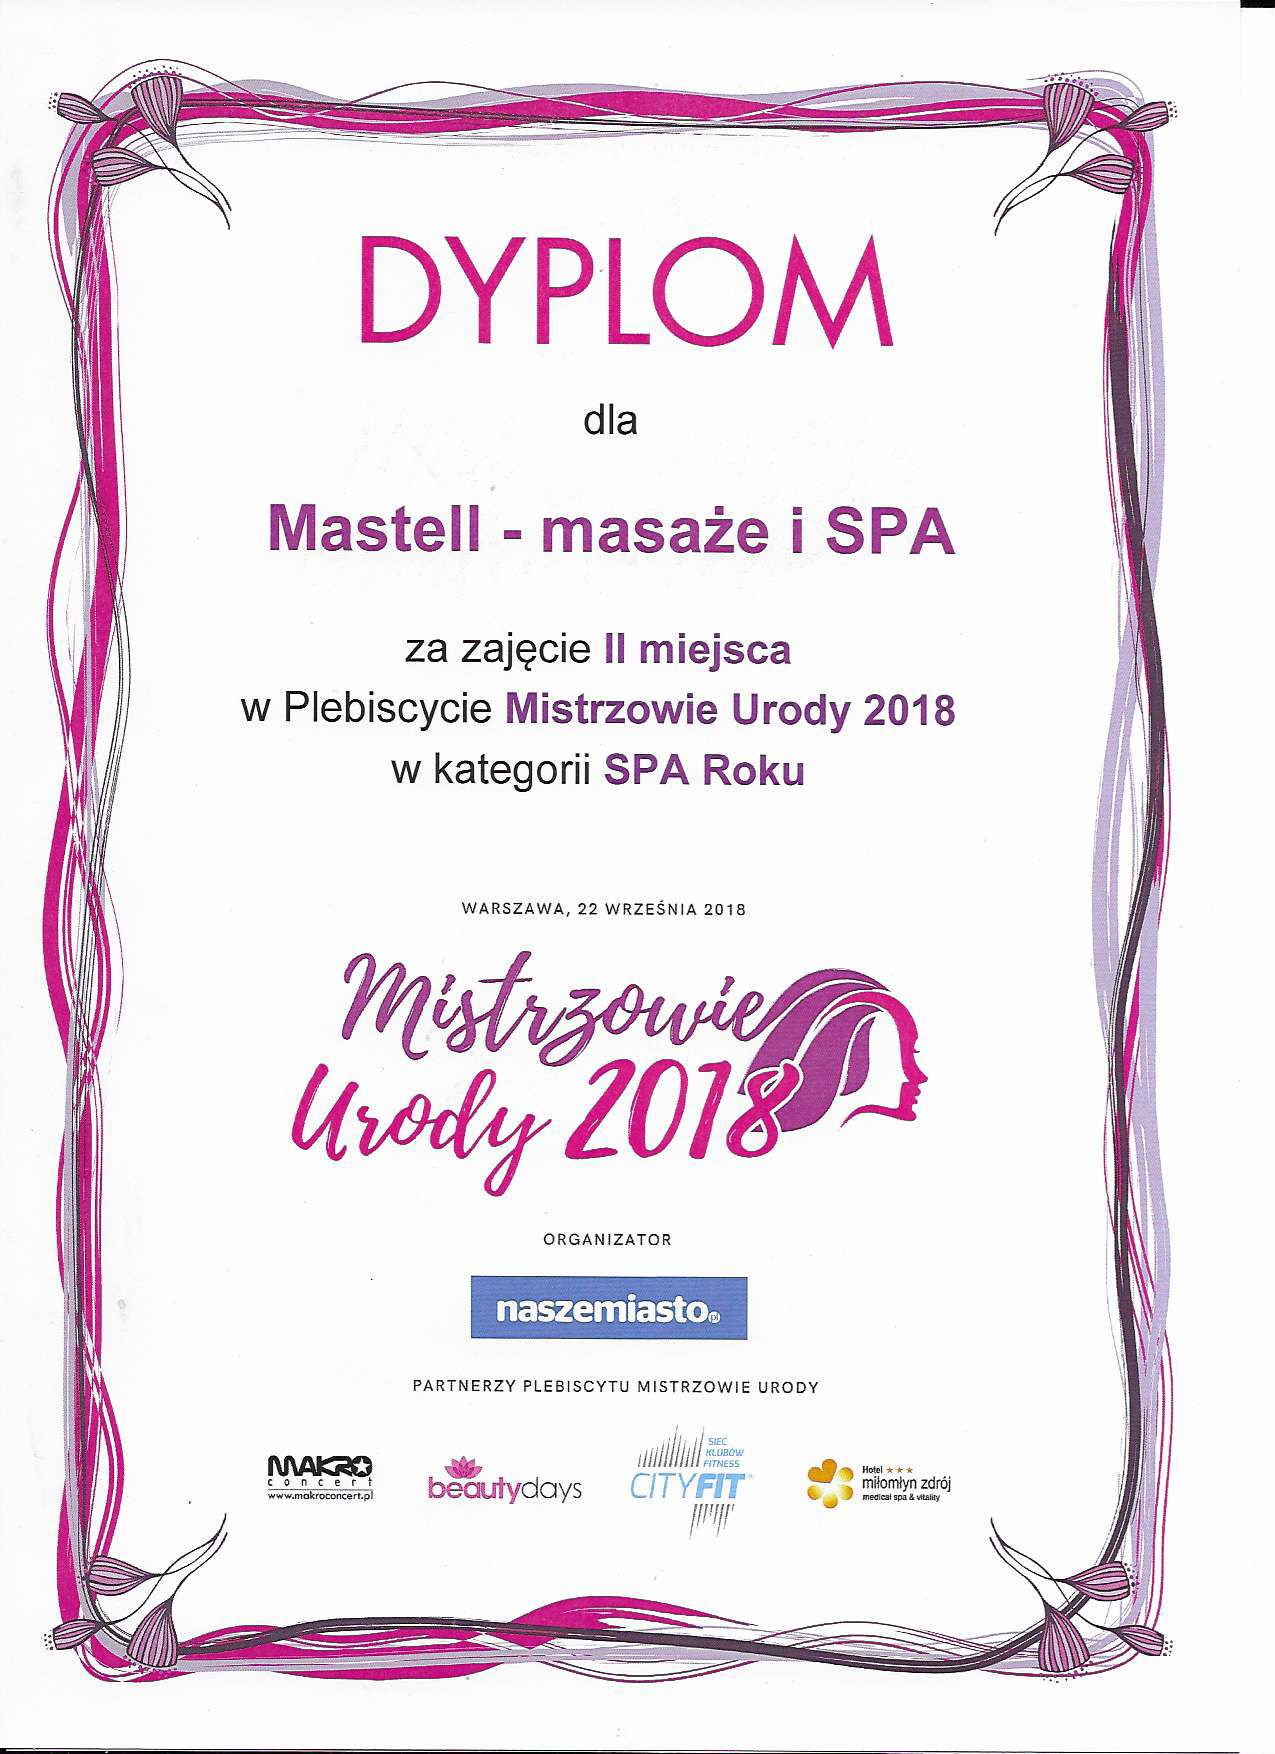 Naszemiasto.pl - Mastell massage & day spa laureatem plebiscytu Mistrzowie Urody 2018